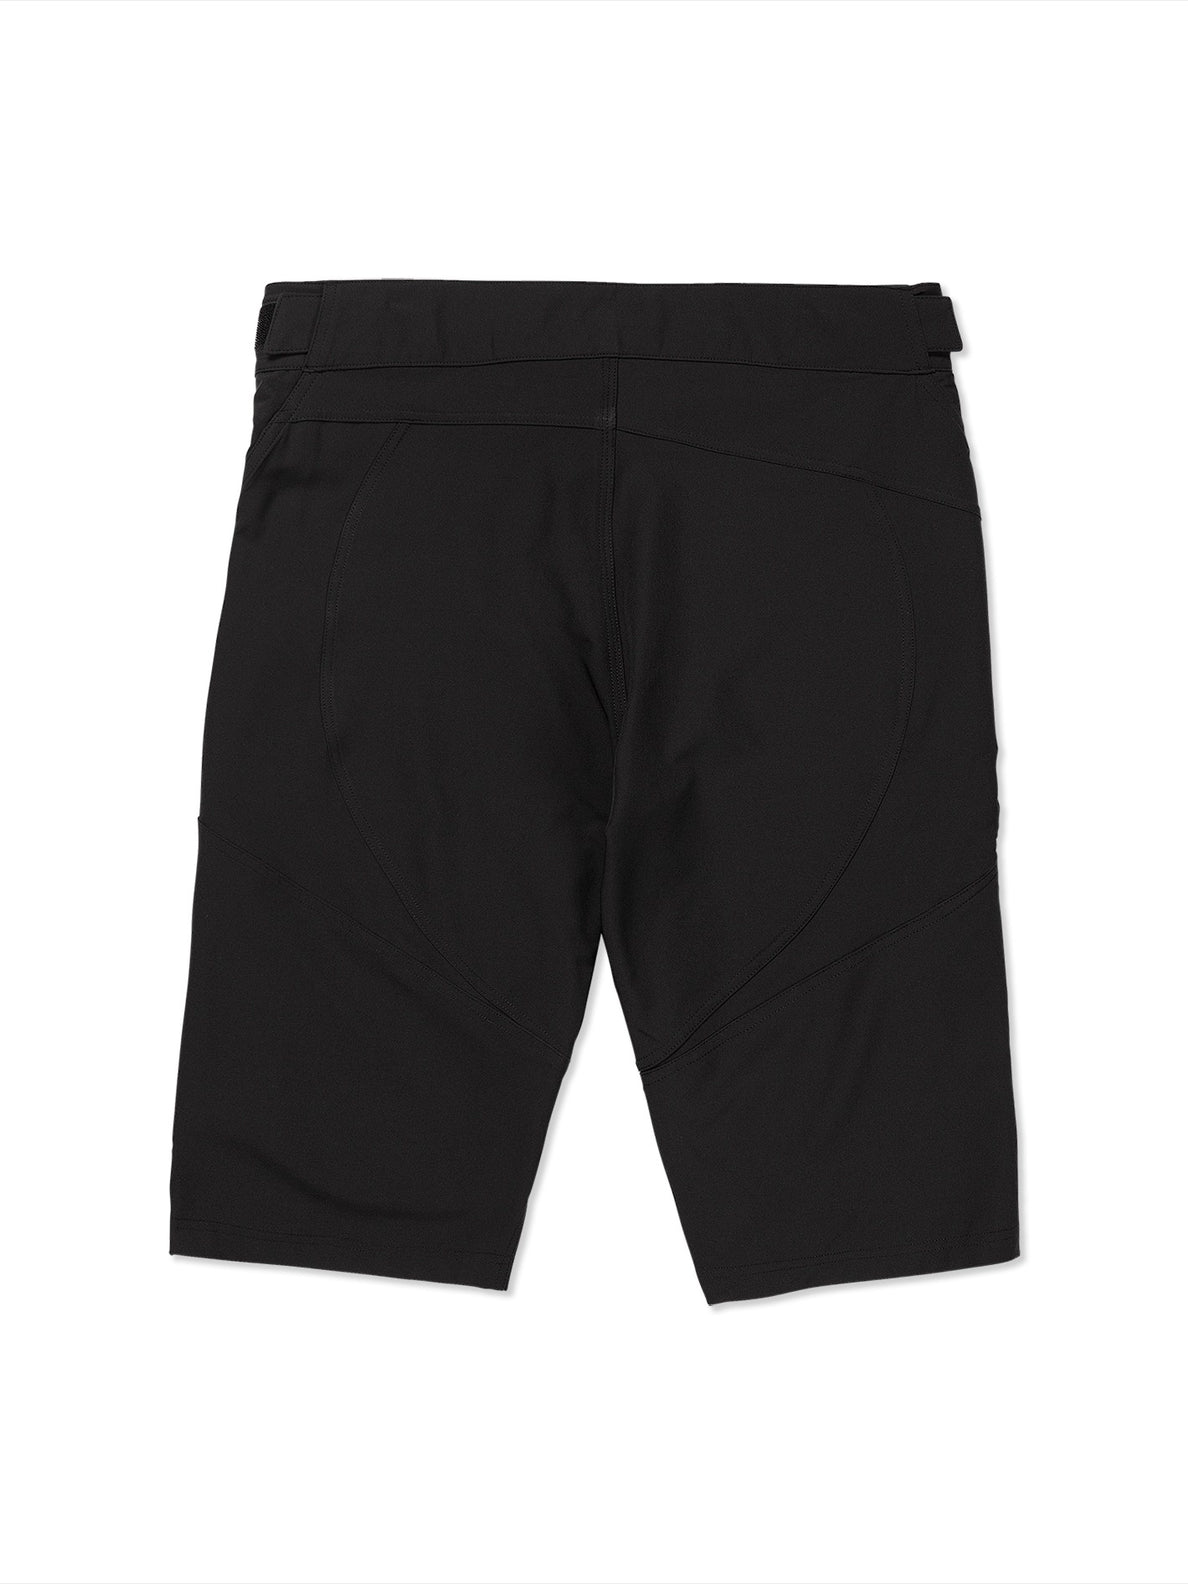 Trail Ripper Shorts - Black